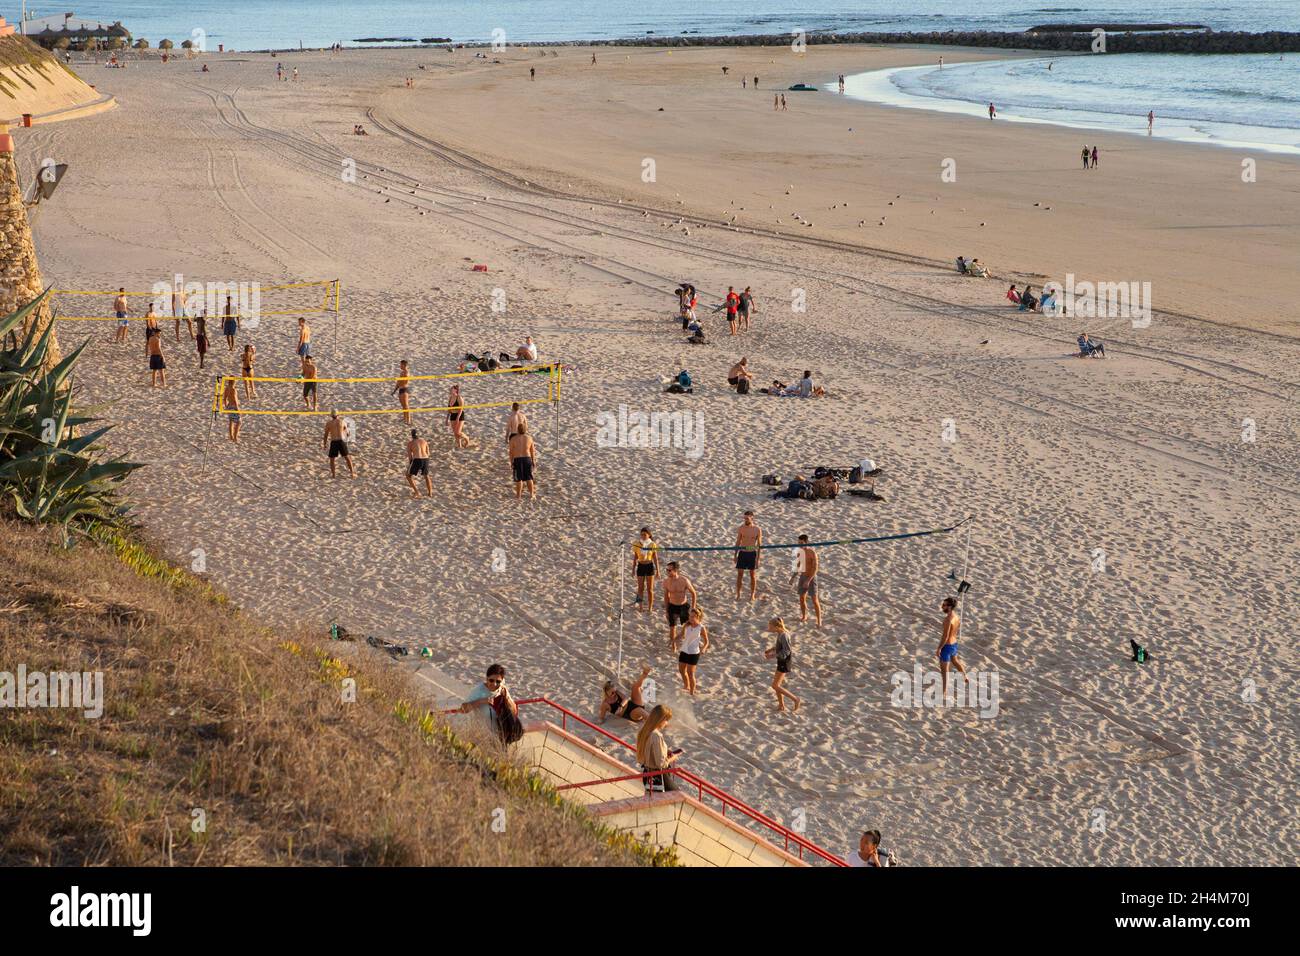 Games of volleyball on Playa de Santa María del Mar in Cadiz Stock Photo